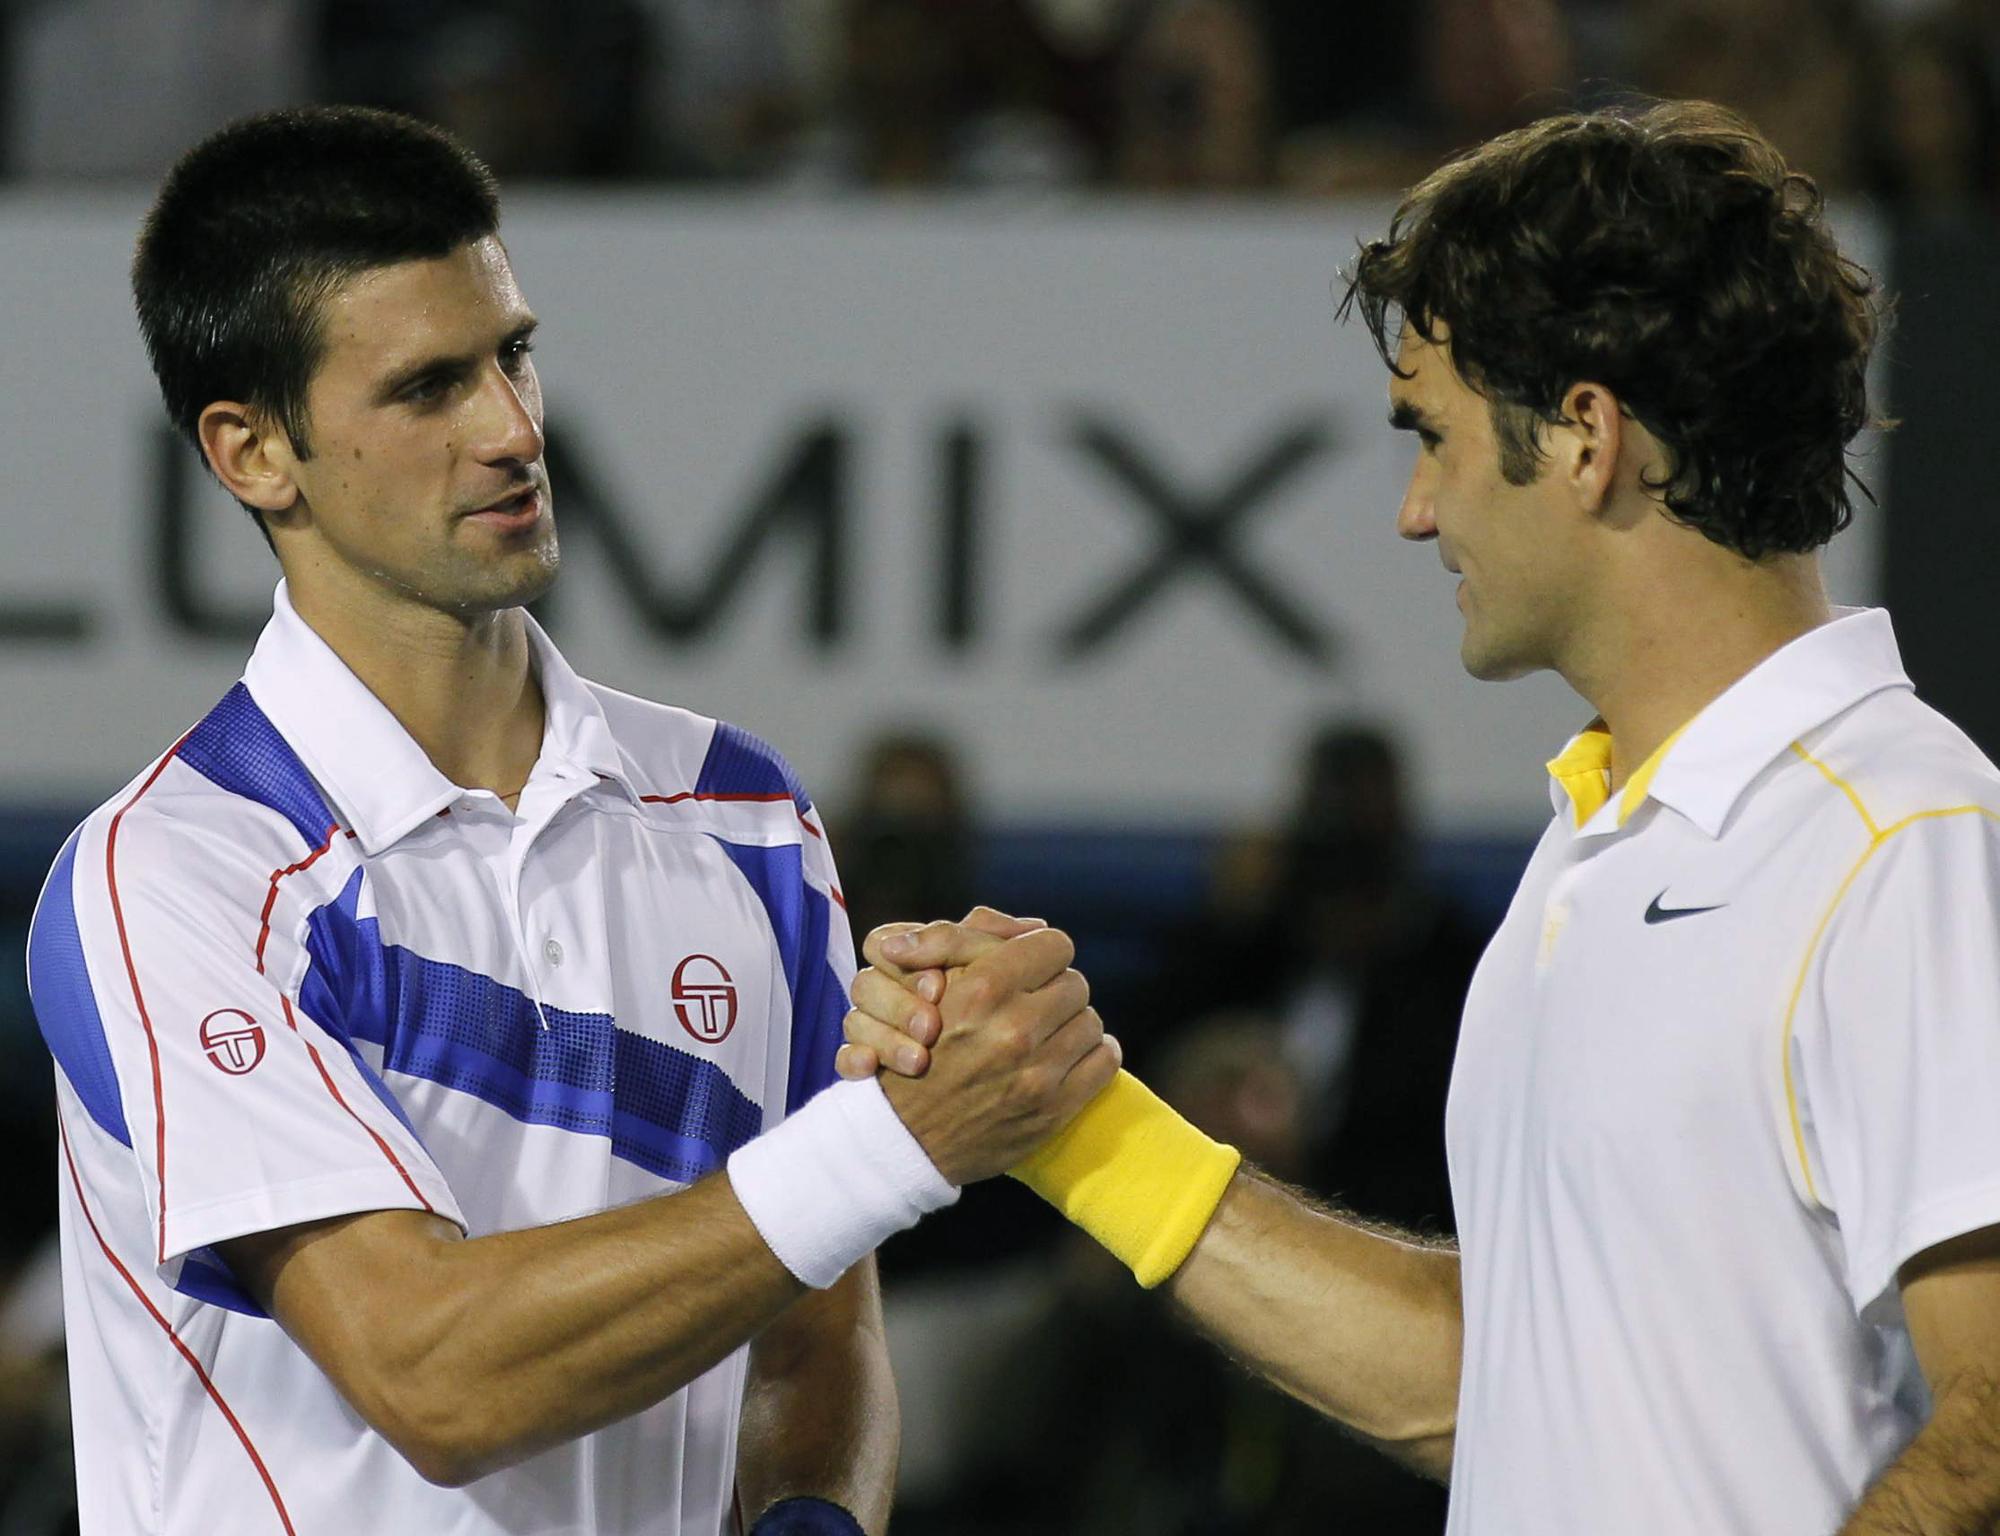 C'est fait, Novak Djokovic élimine Roger Federer, tenant du titre déchu à Melbourne. [Reuters - Yuriko Nakao]